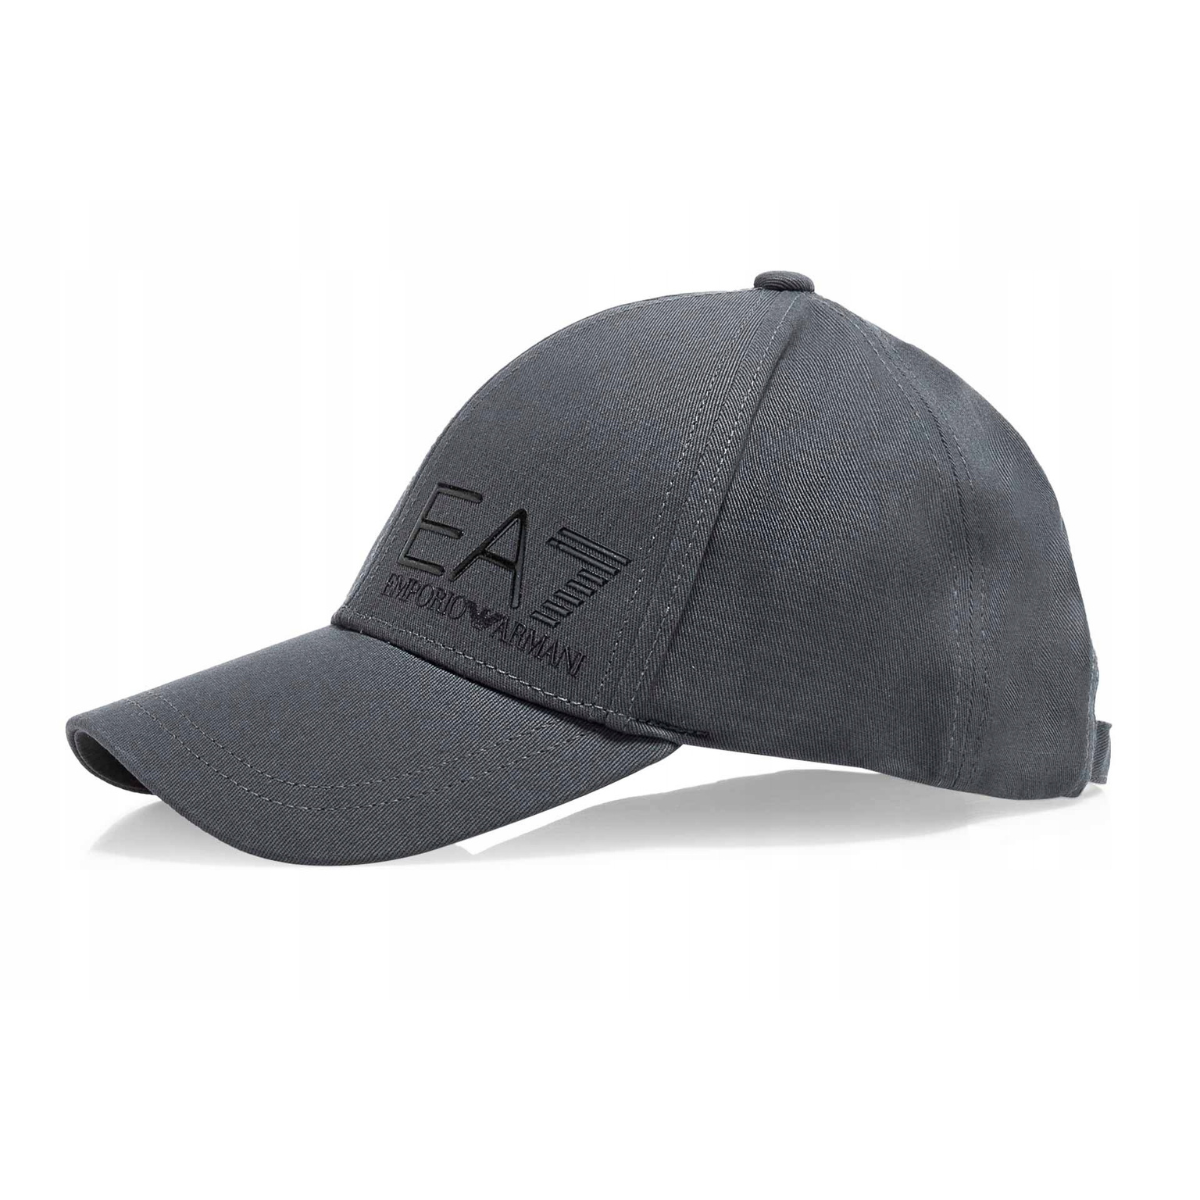 EA7 Giorgio Armani - Unisex Woven Baseball Cap - IronGate/Black